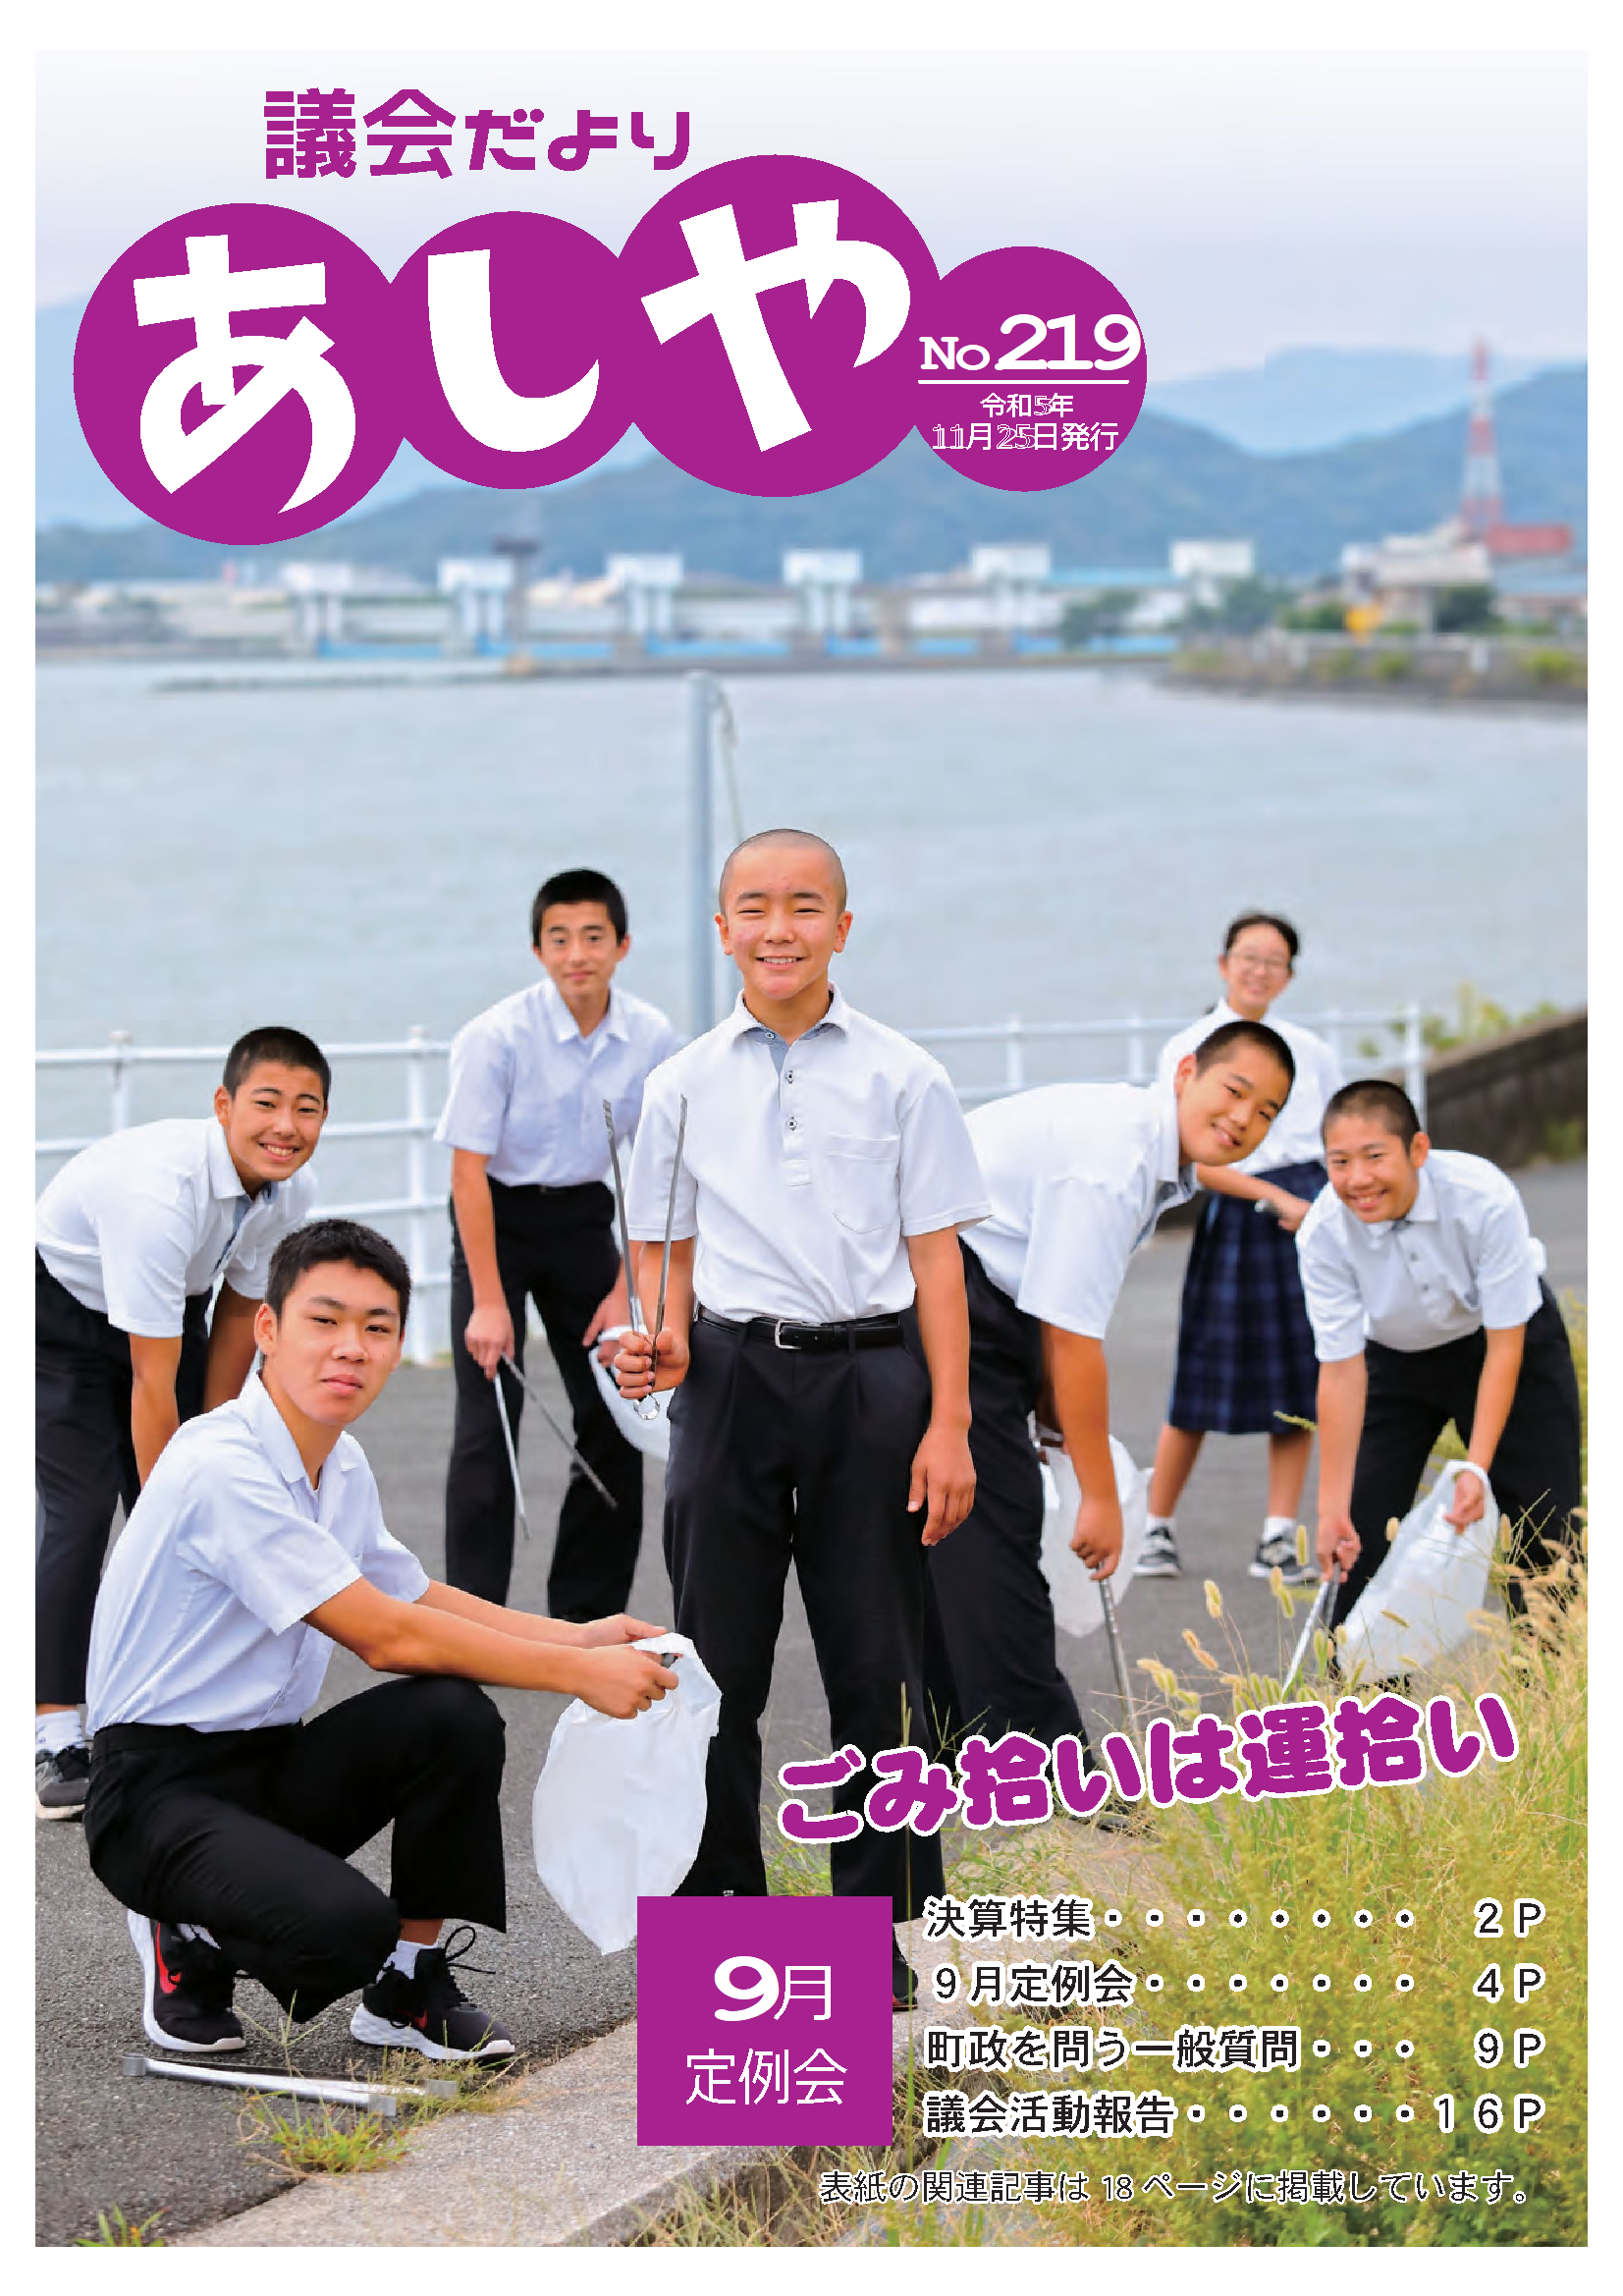 議会だよりあしや219号（令和5年11月25日）表紙　7人の芦屋中学校剣道部の生徒がごみ拾いをしている写真